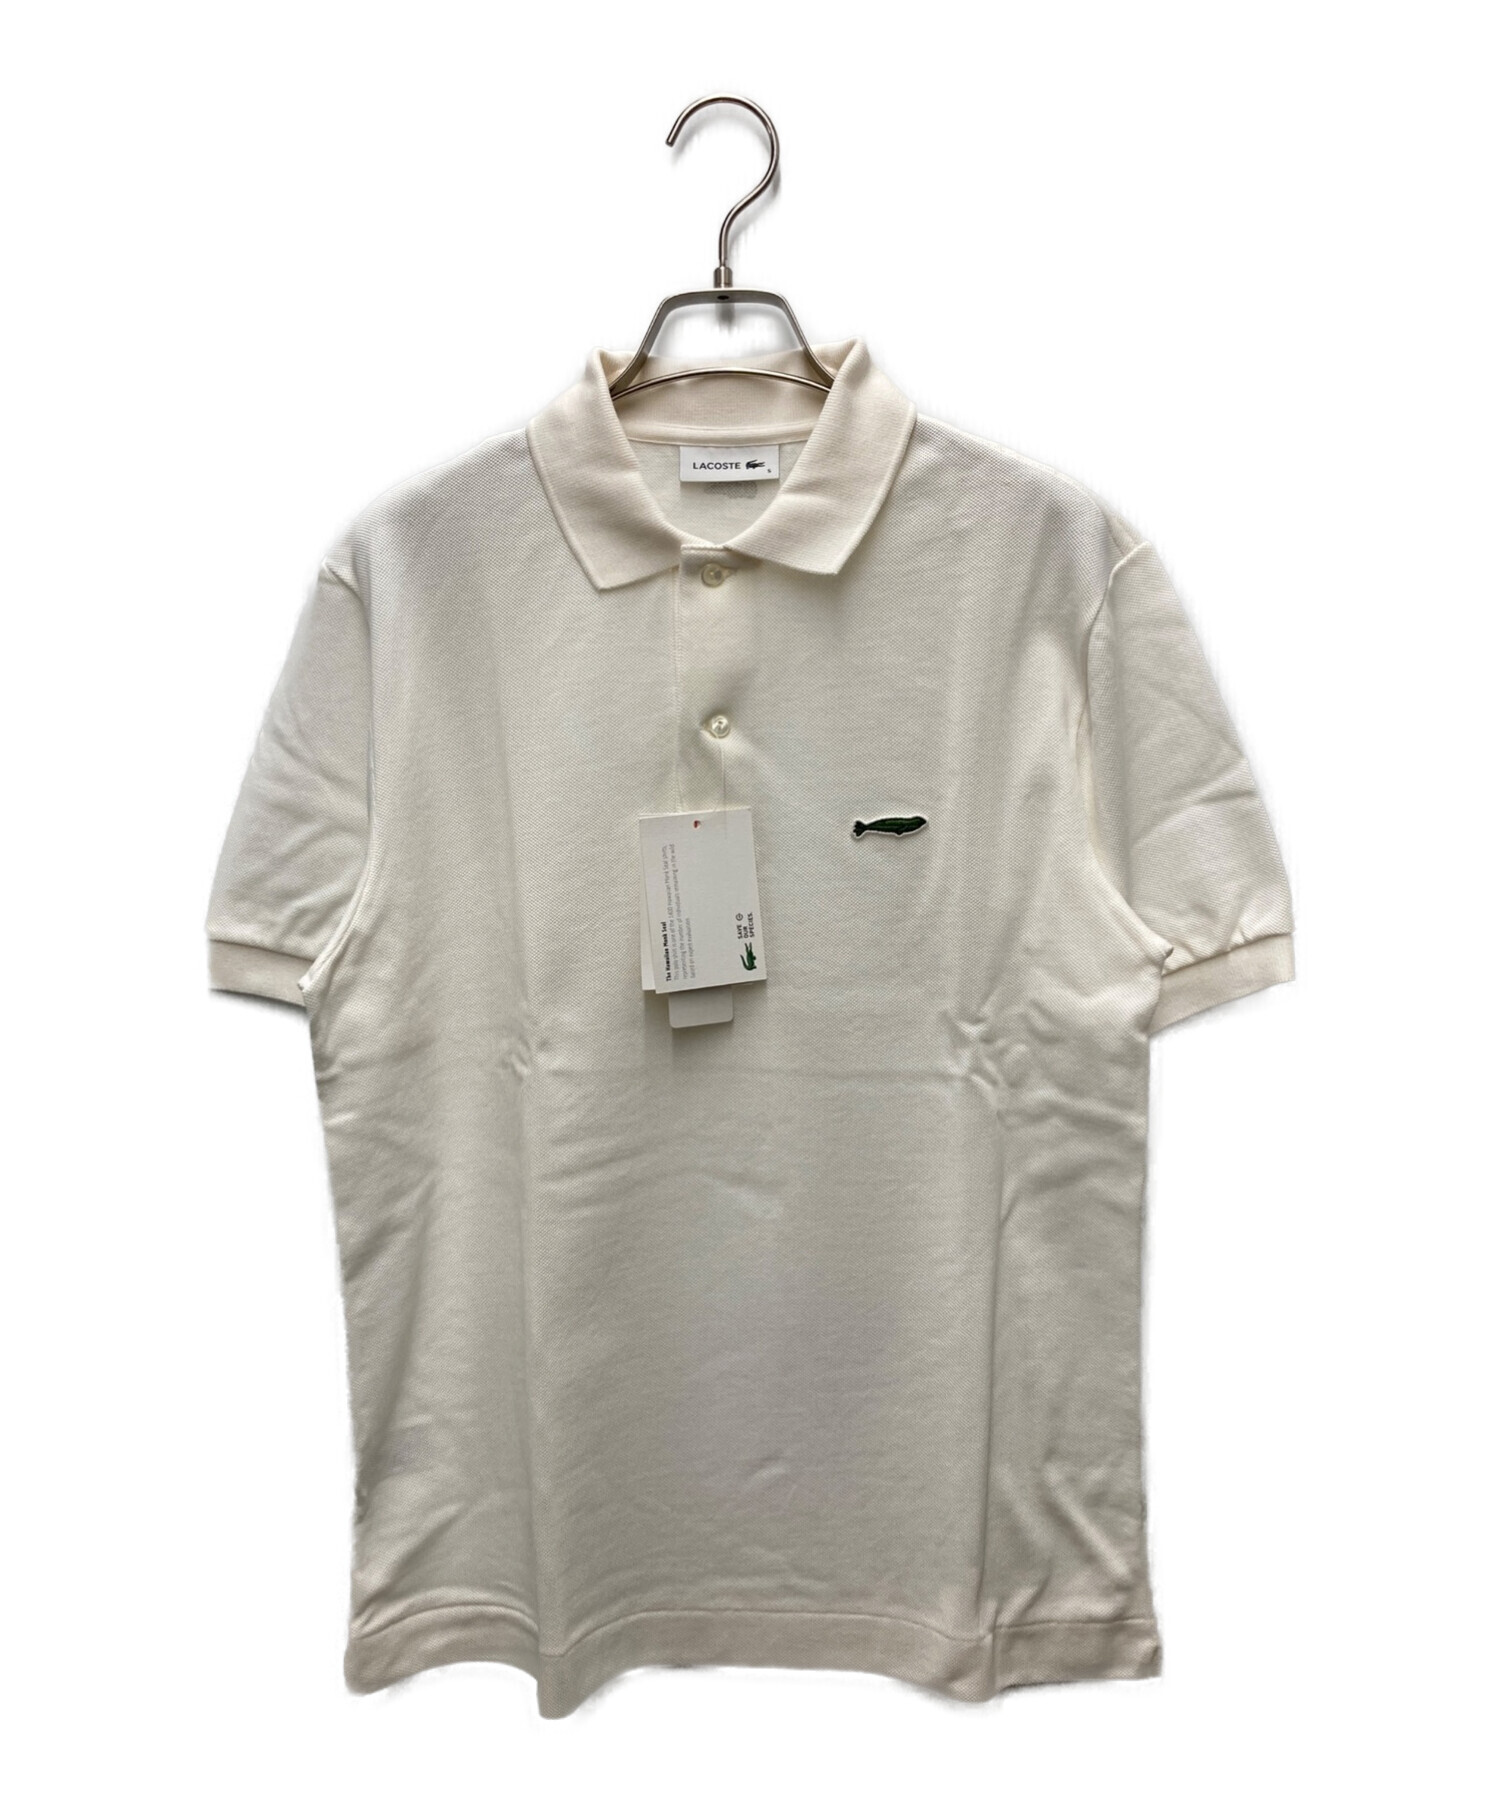 LACOSTE (ラコステ) ハワイアンモンクアザラシポロシャツ ホワイト サイズ:S 未使用品